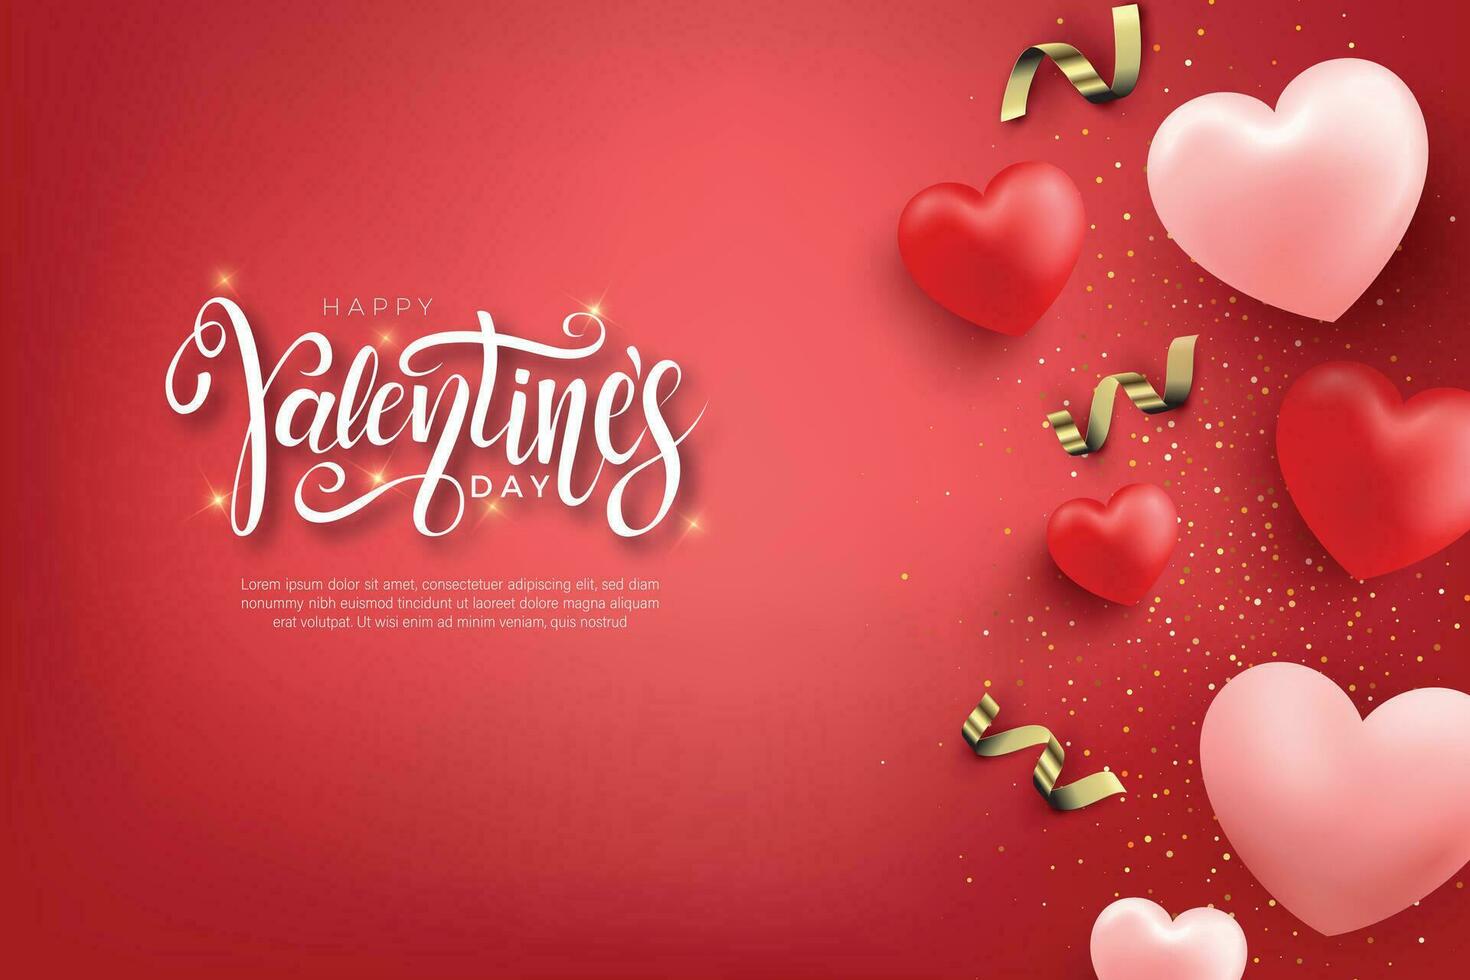 buon San Valentino romantico biglietto di auguri, poster tipografico con calligrafia moderna. stile vintage retrò. illustrazione vettoriale